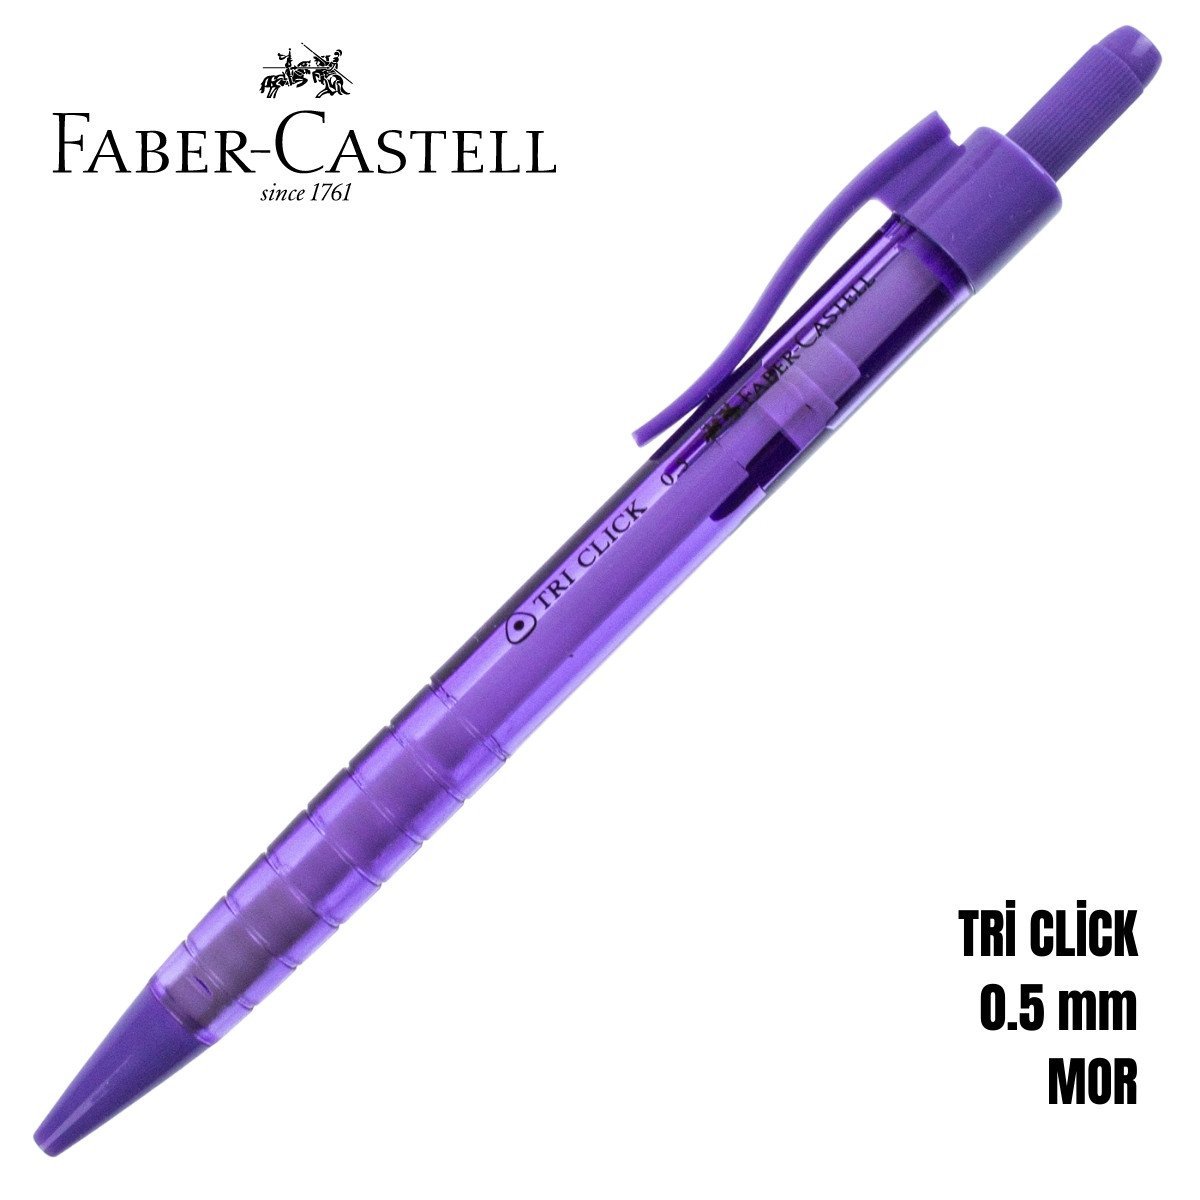 Faber-Castell Tri Click Versatil 0.5mm Mor